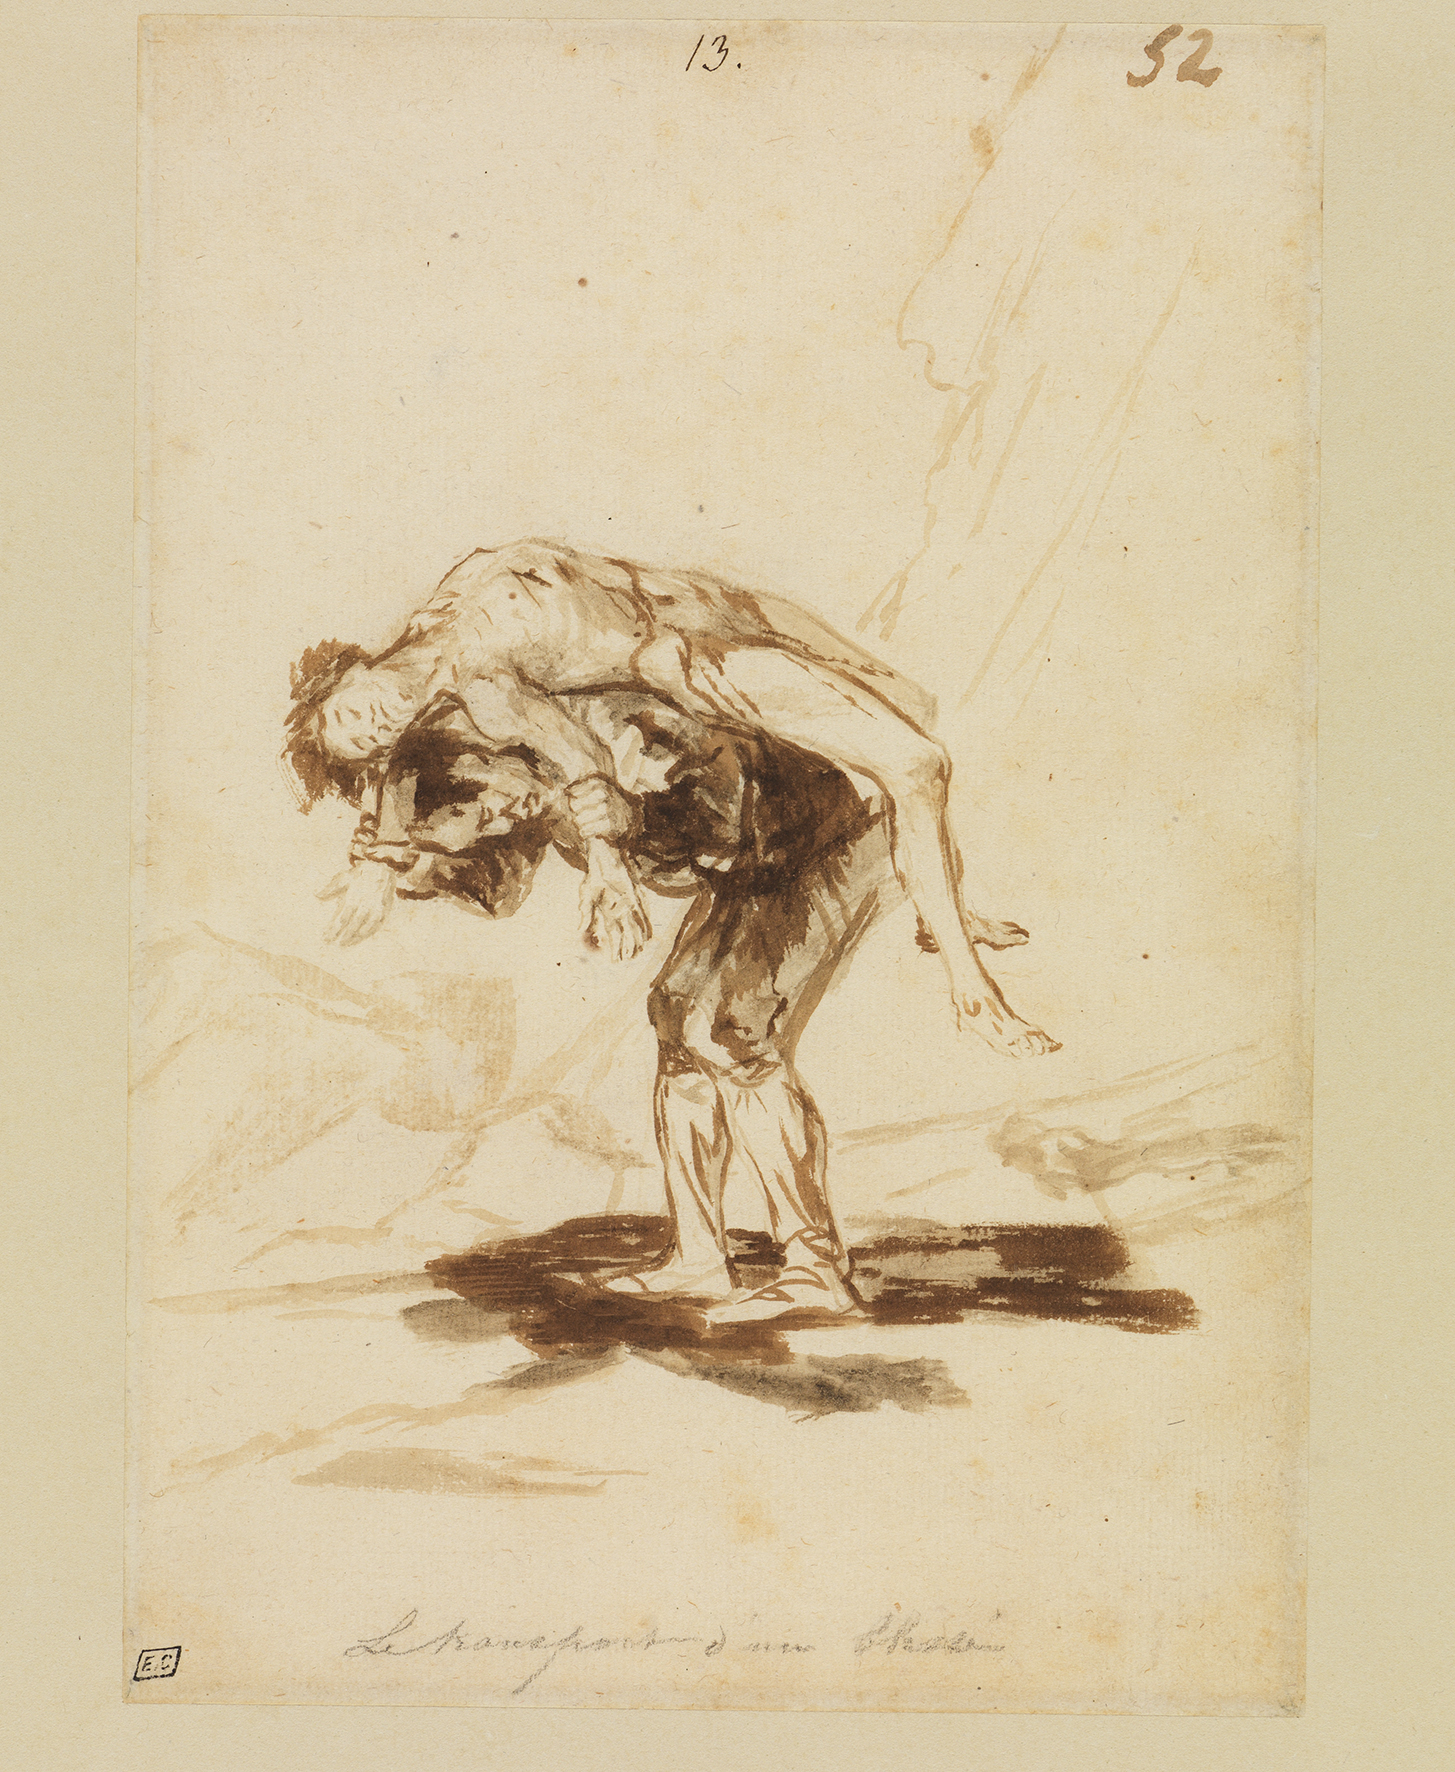 Zeichnung Ein Mann trägt einen Toten von Francisco de Goya, entstanden zwischen 1815 und 1820. Die Zeichnung zeigt einen Mann der einen anderen Mann trägt.